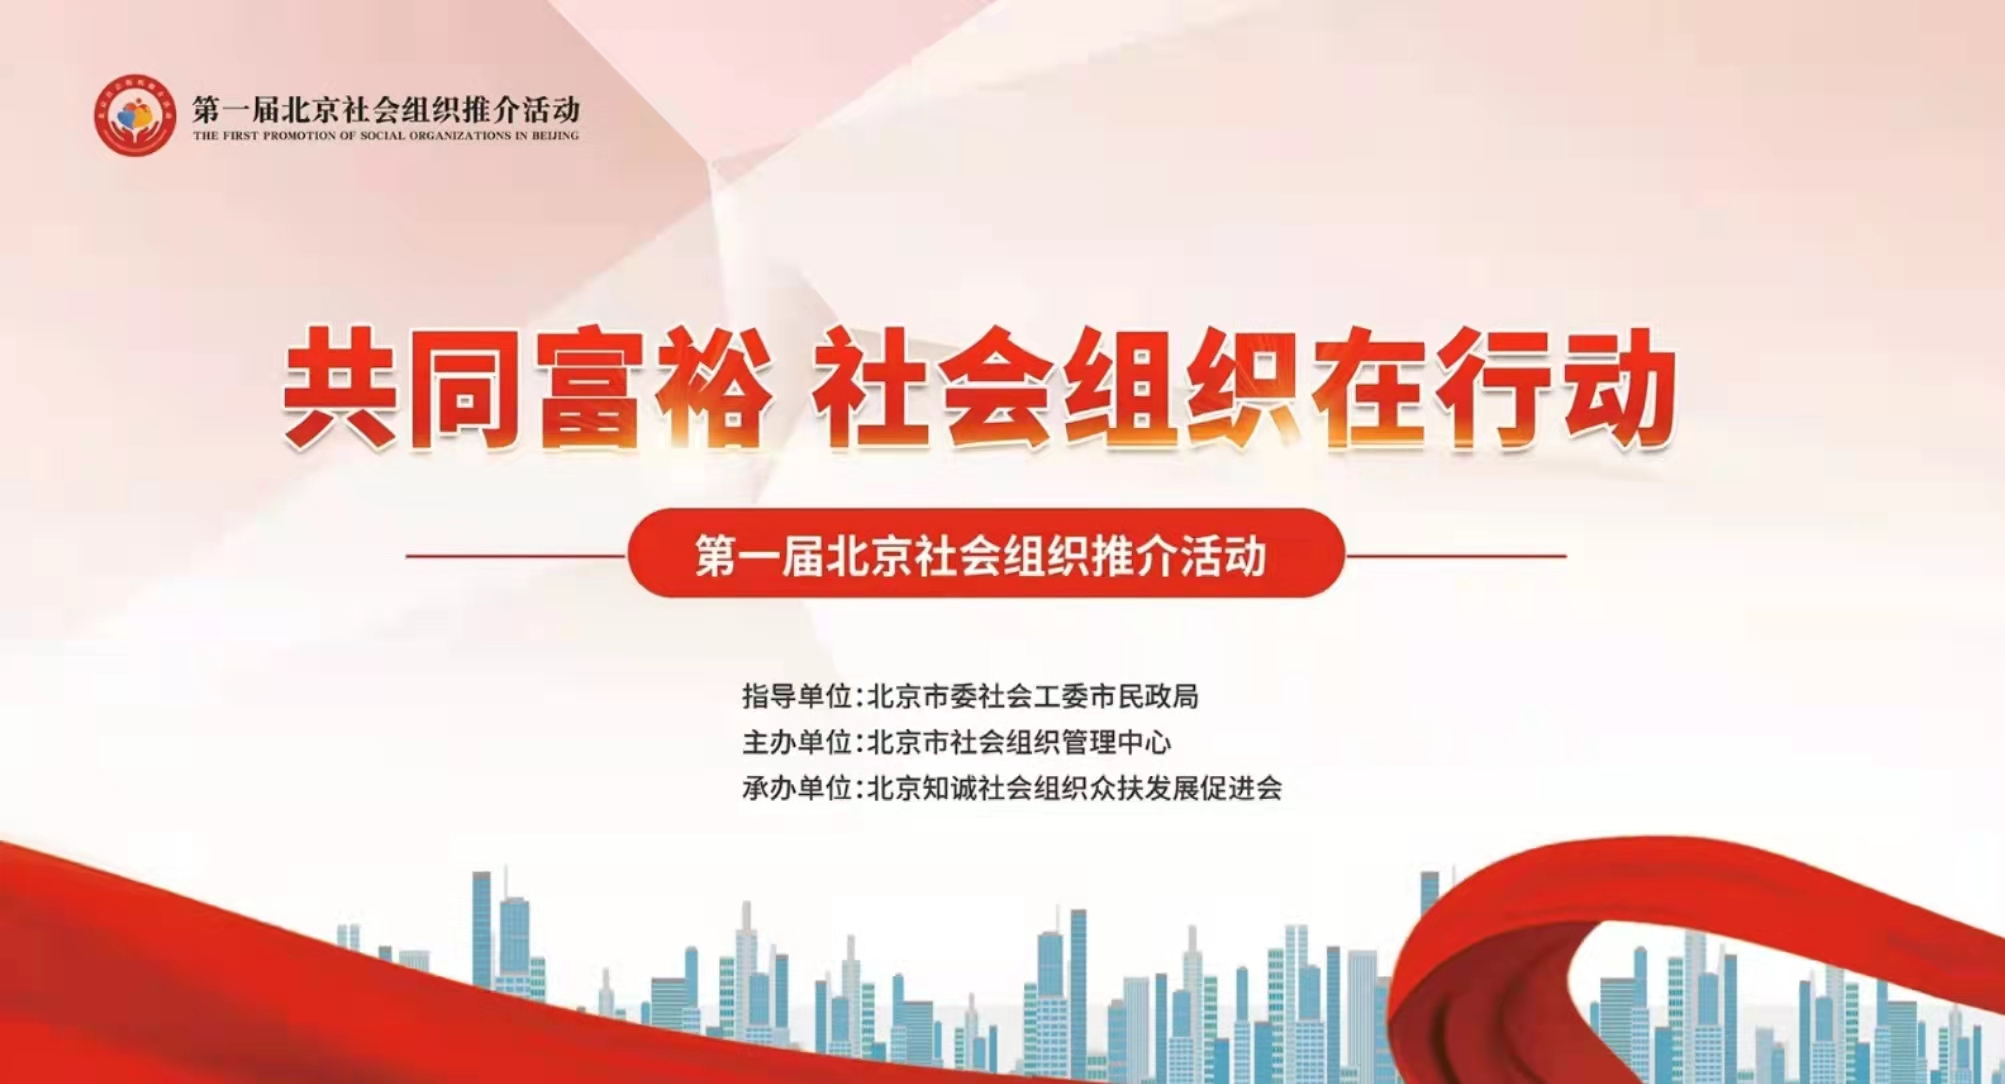 澳门官方游戏网站(中国)有限公司官网参加第一届北京社会组织推介活动